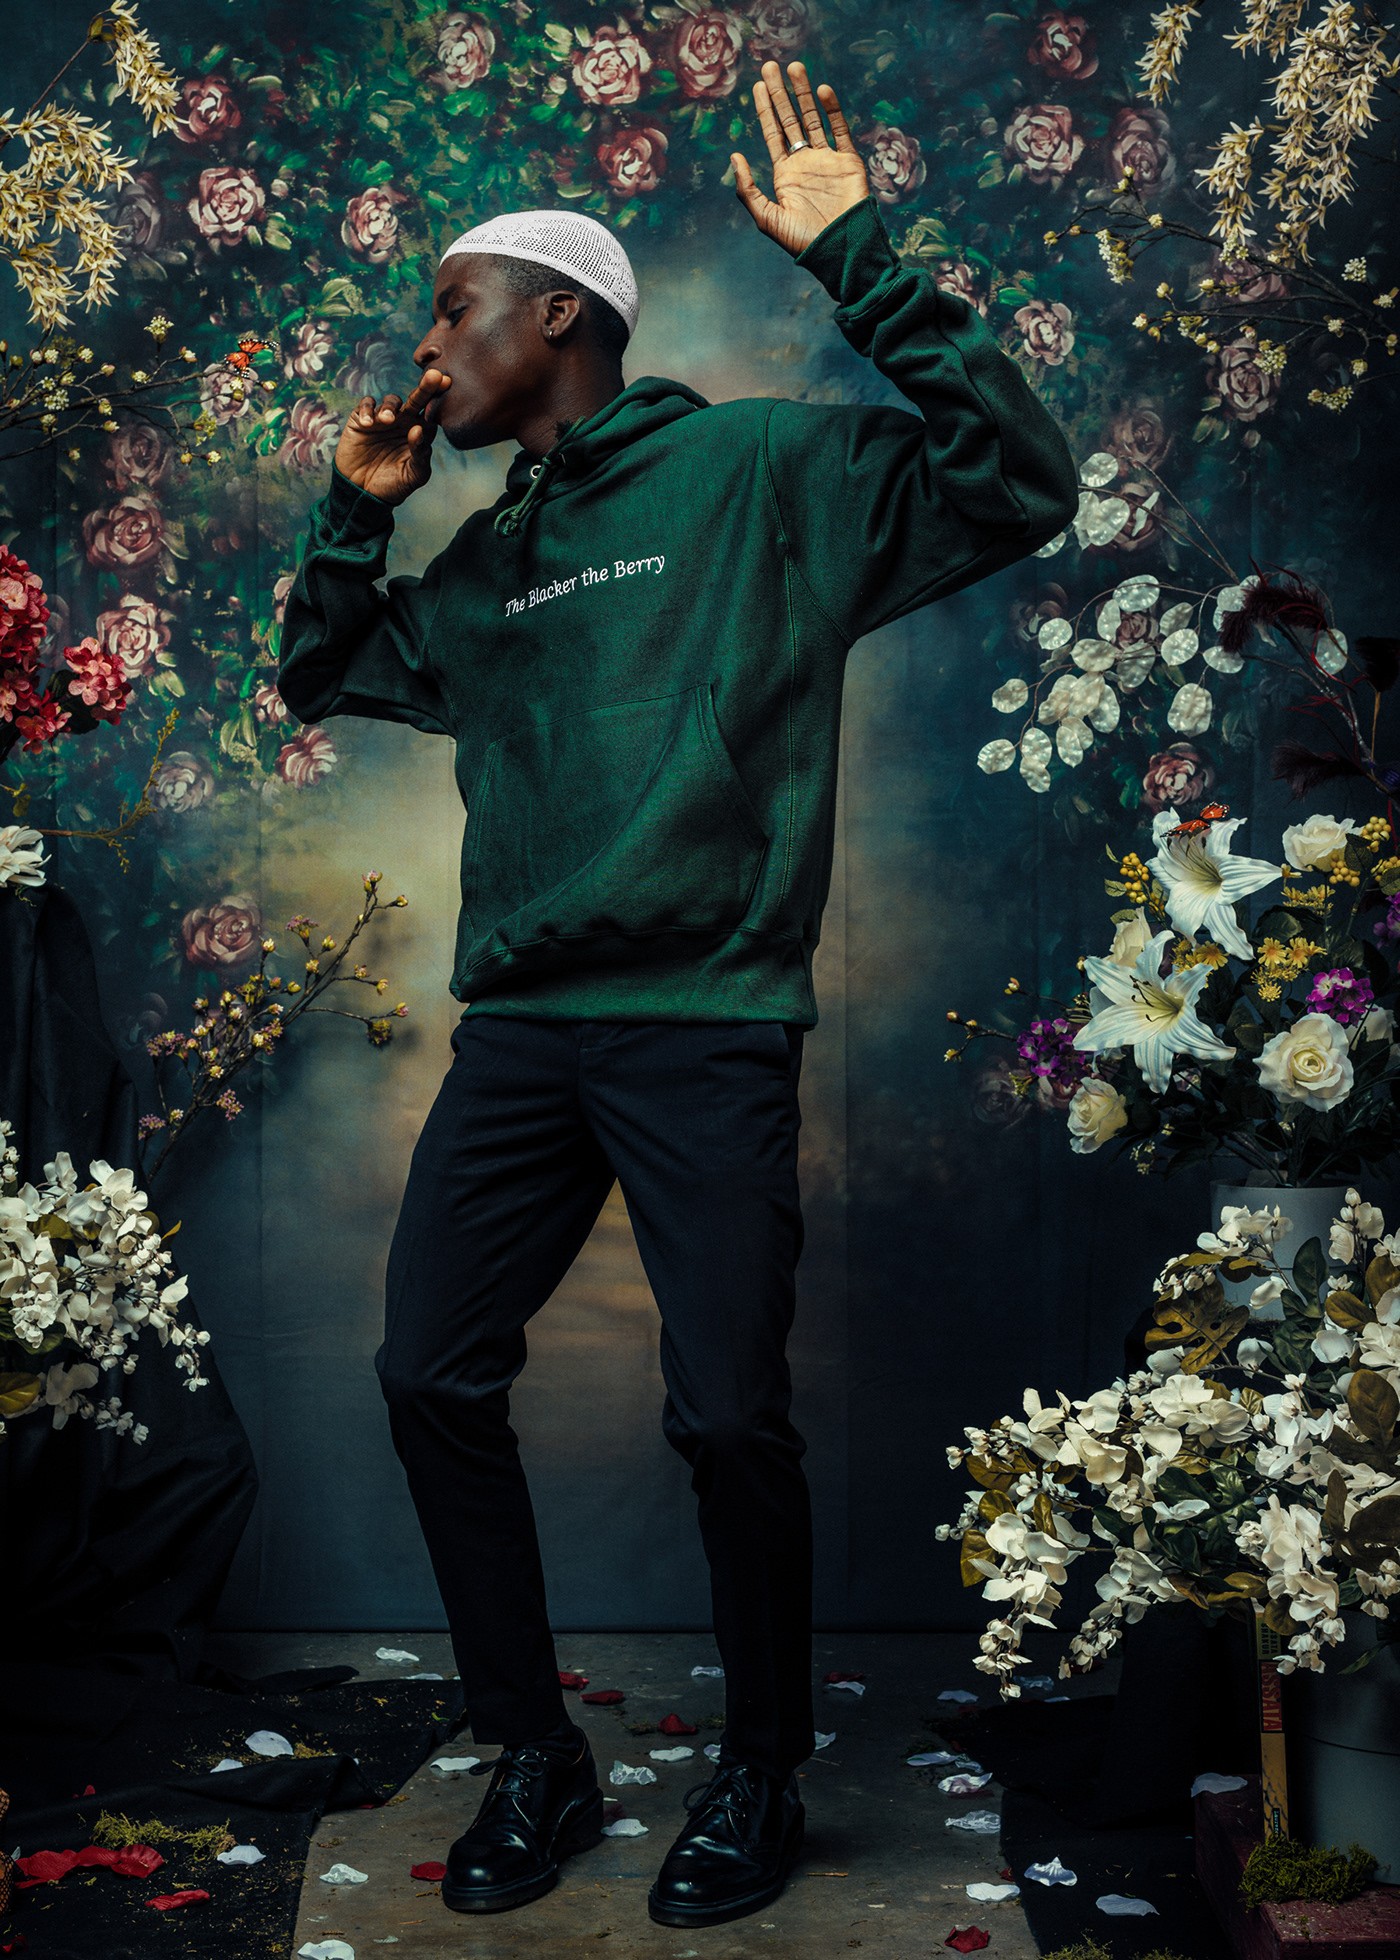 black contemporary art culture fashion design floral hip hop kendrick lamar Portraiture Renaissance tupac